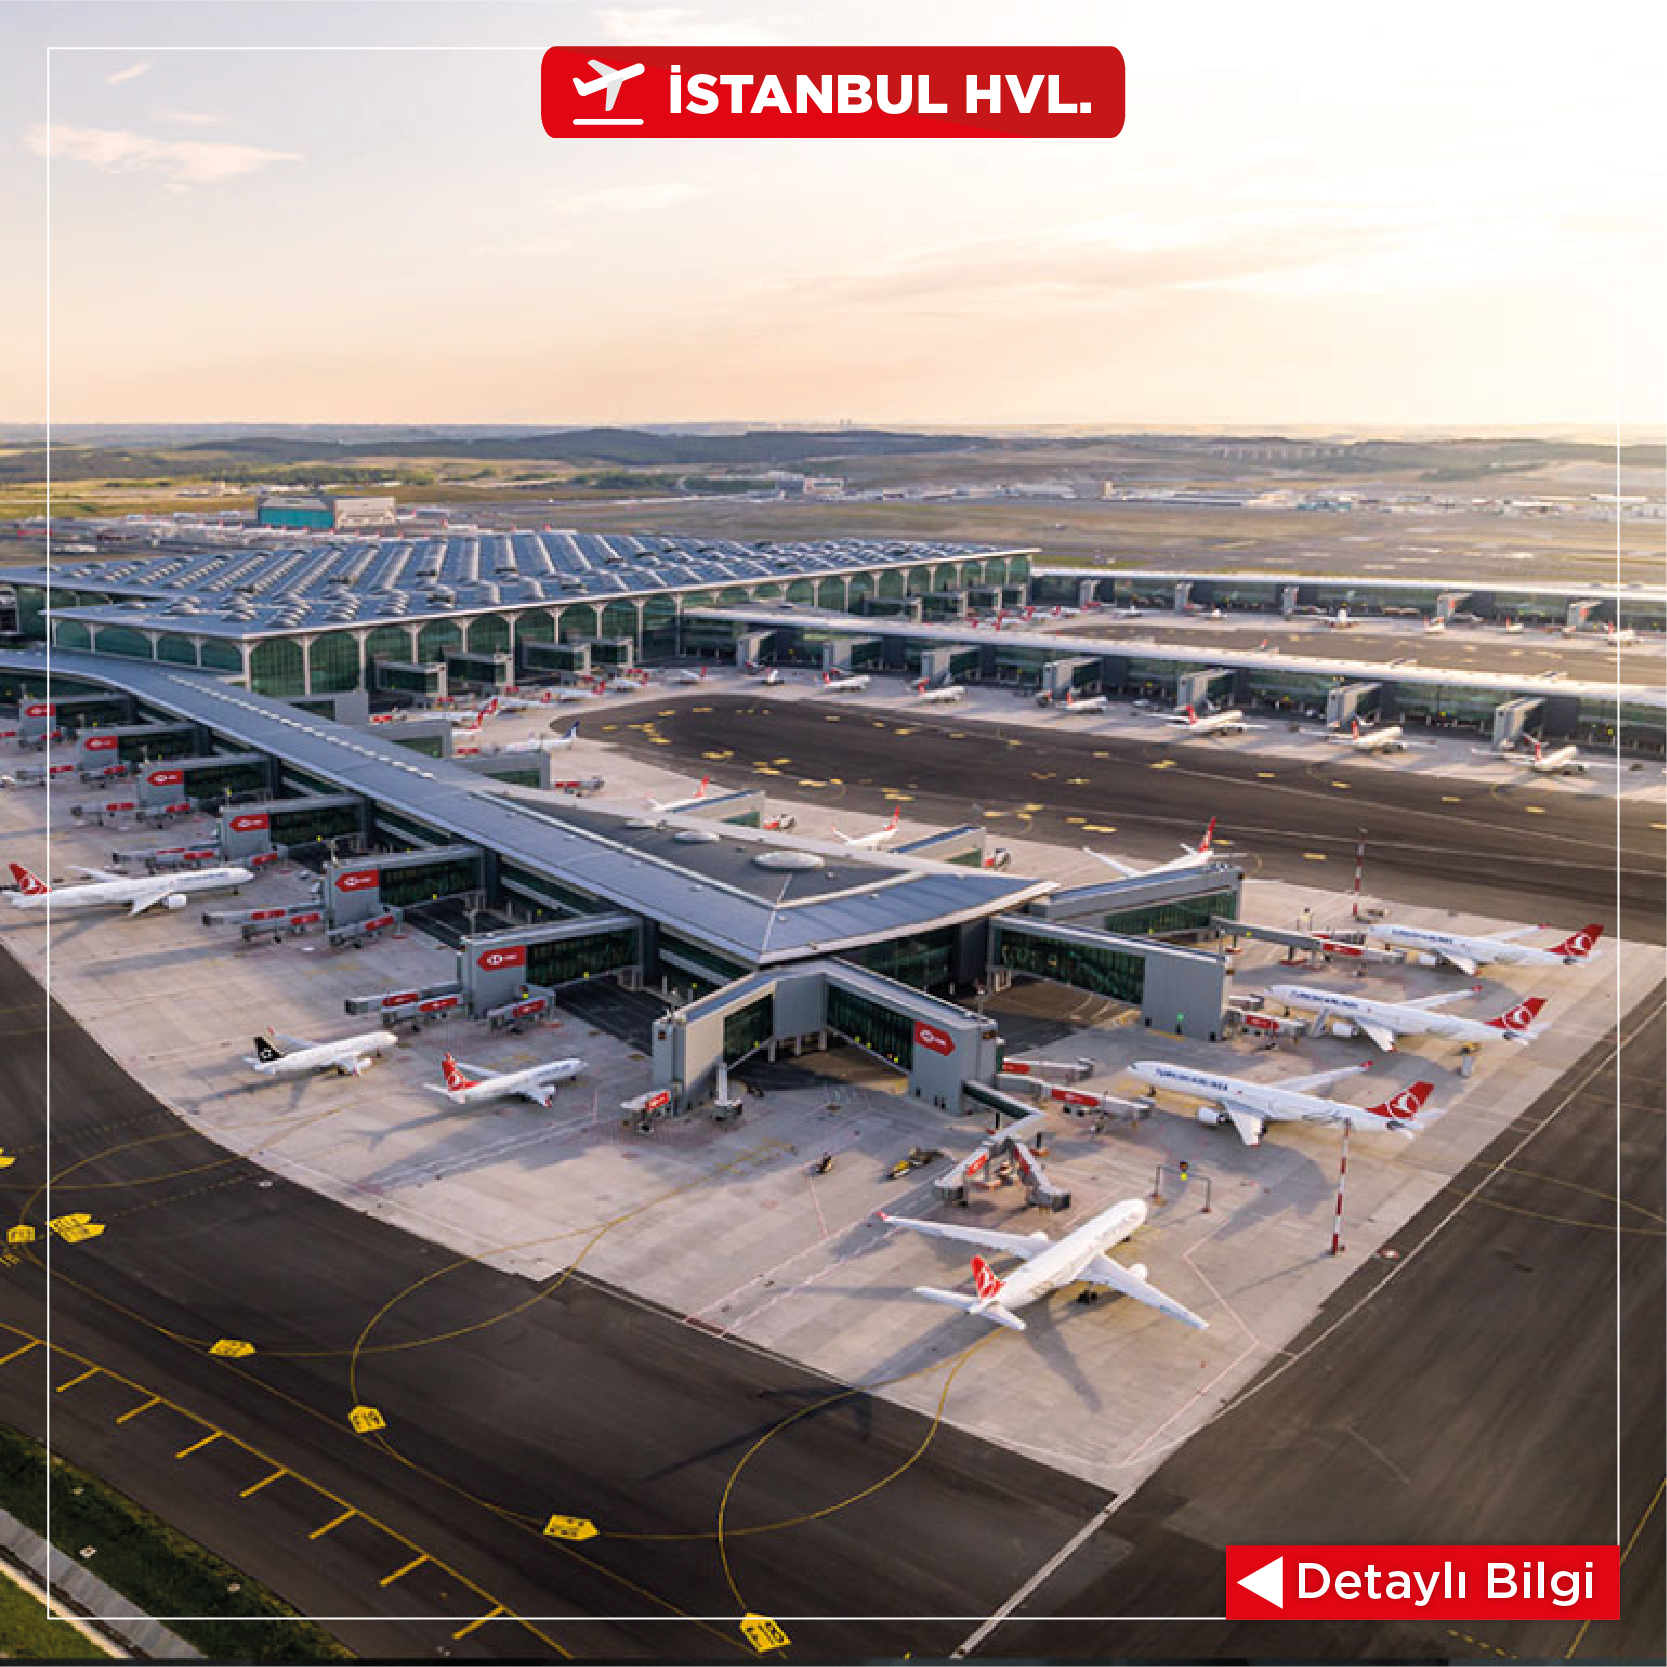 İstanbul Airport Car Rental